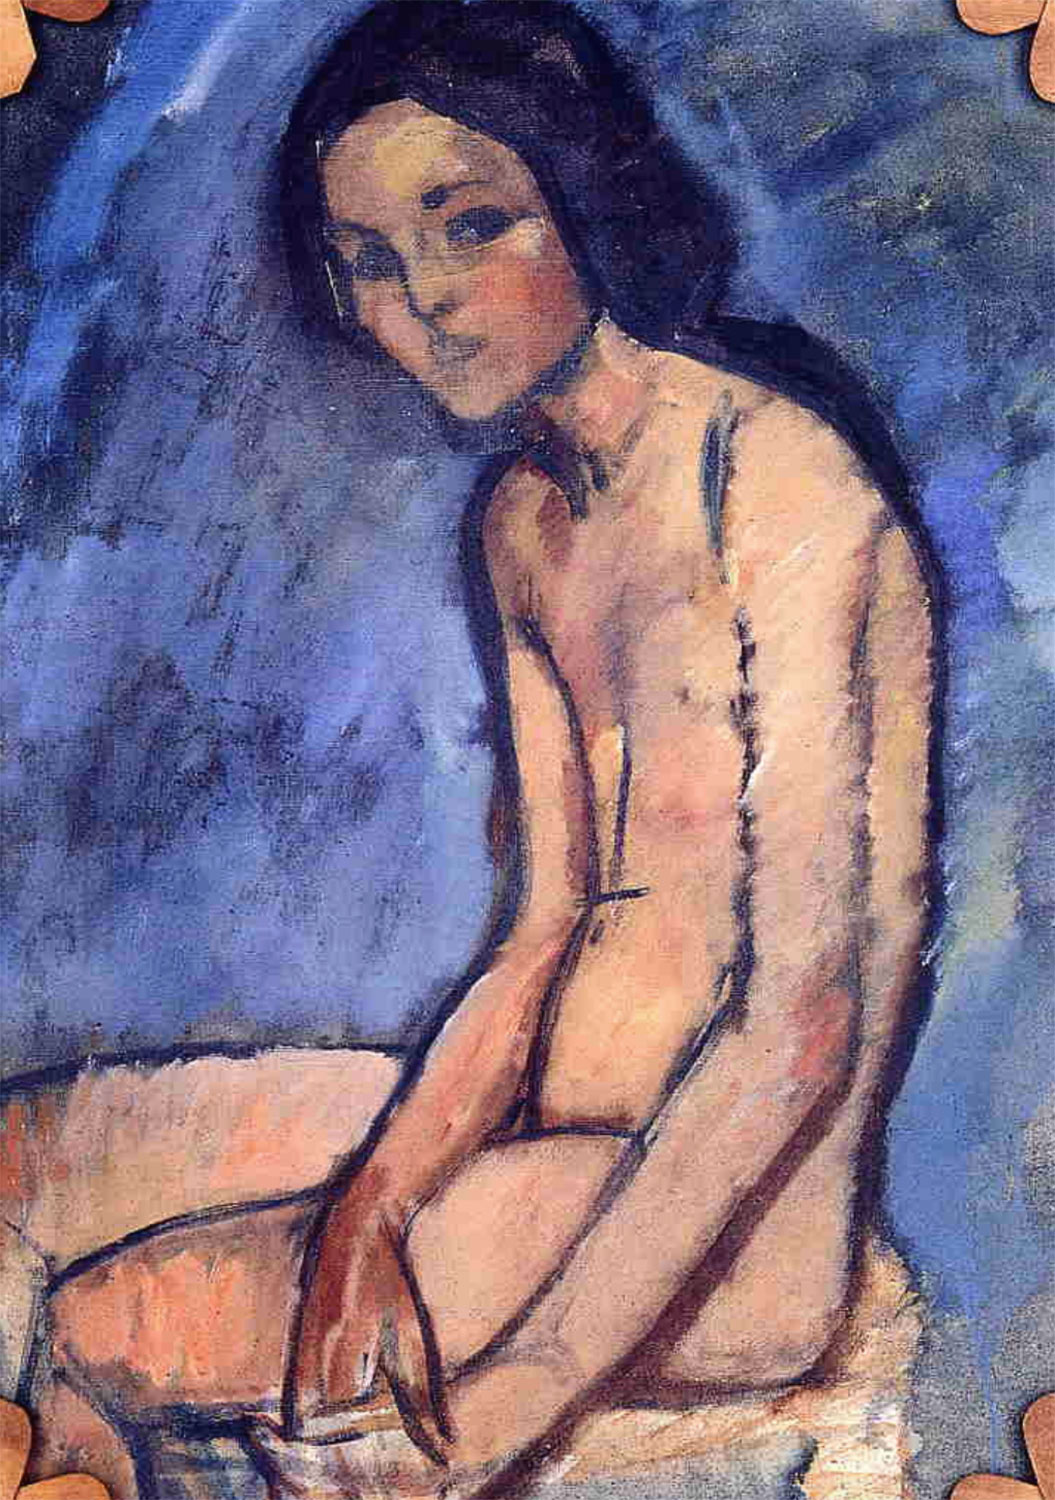 Nudo seduto (Seated Nude, 1909)